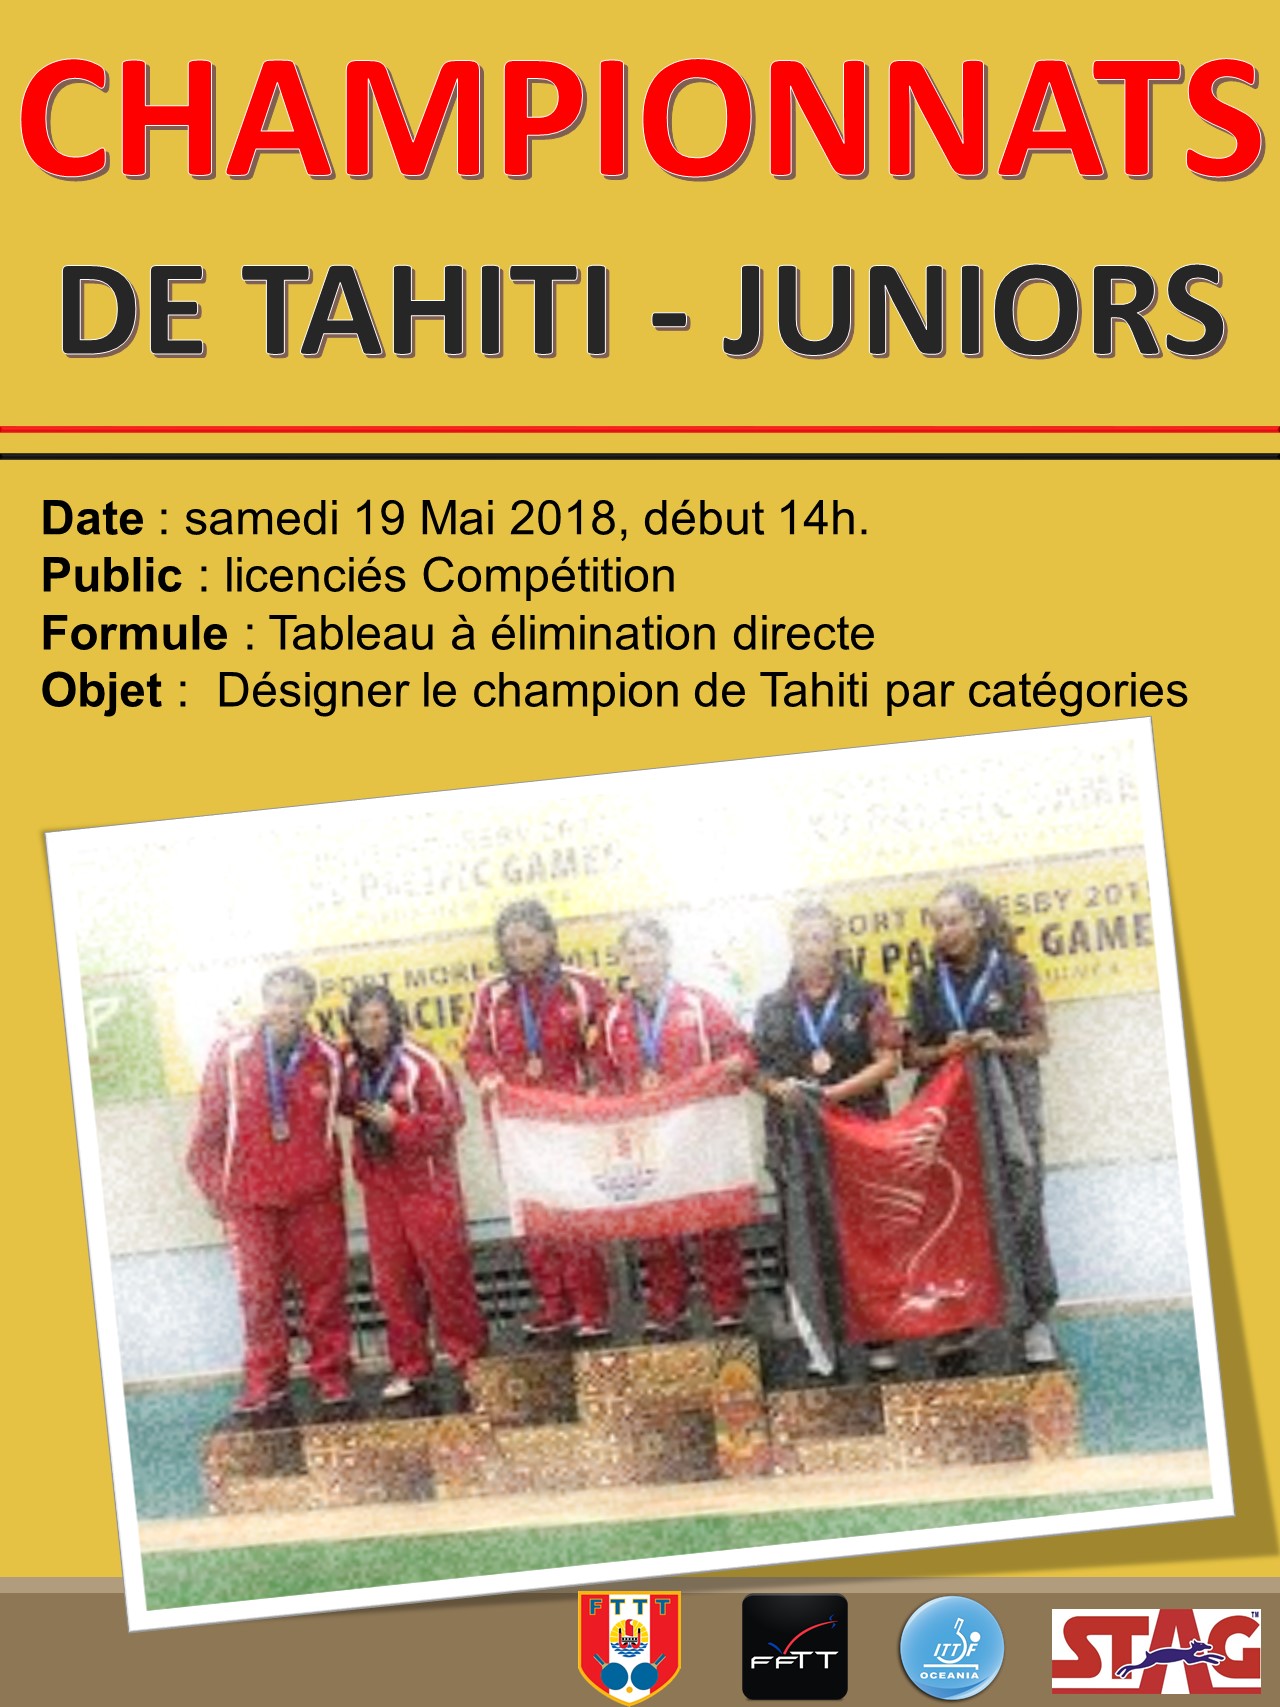 Championnats de Tahiti Juniors - 19.05.18